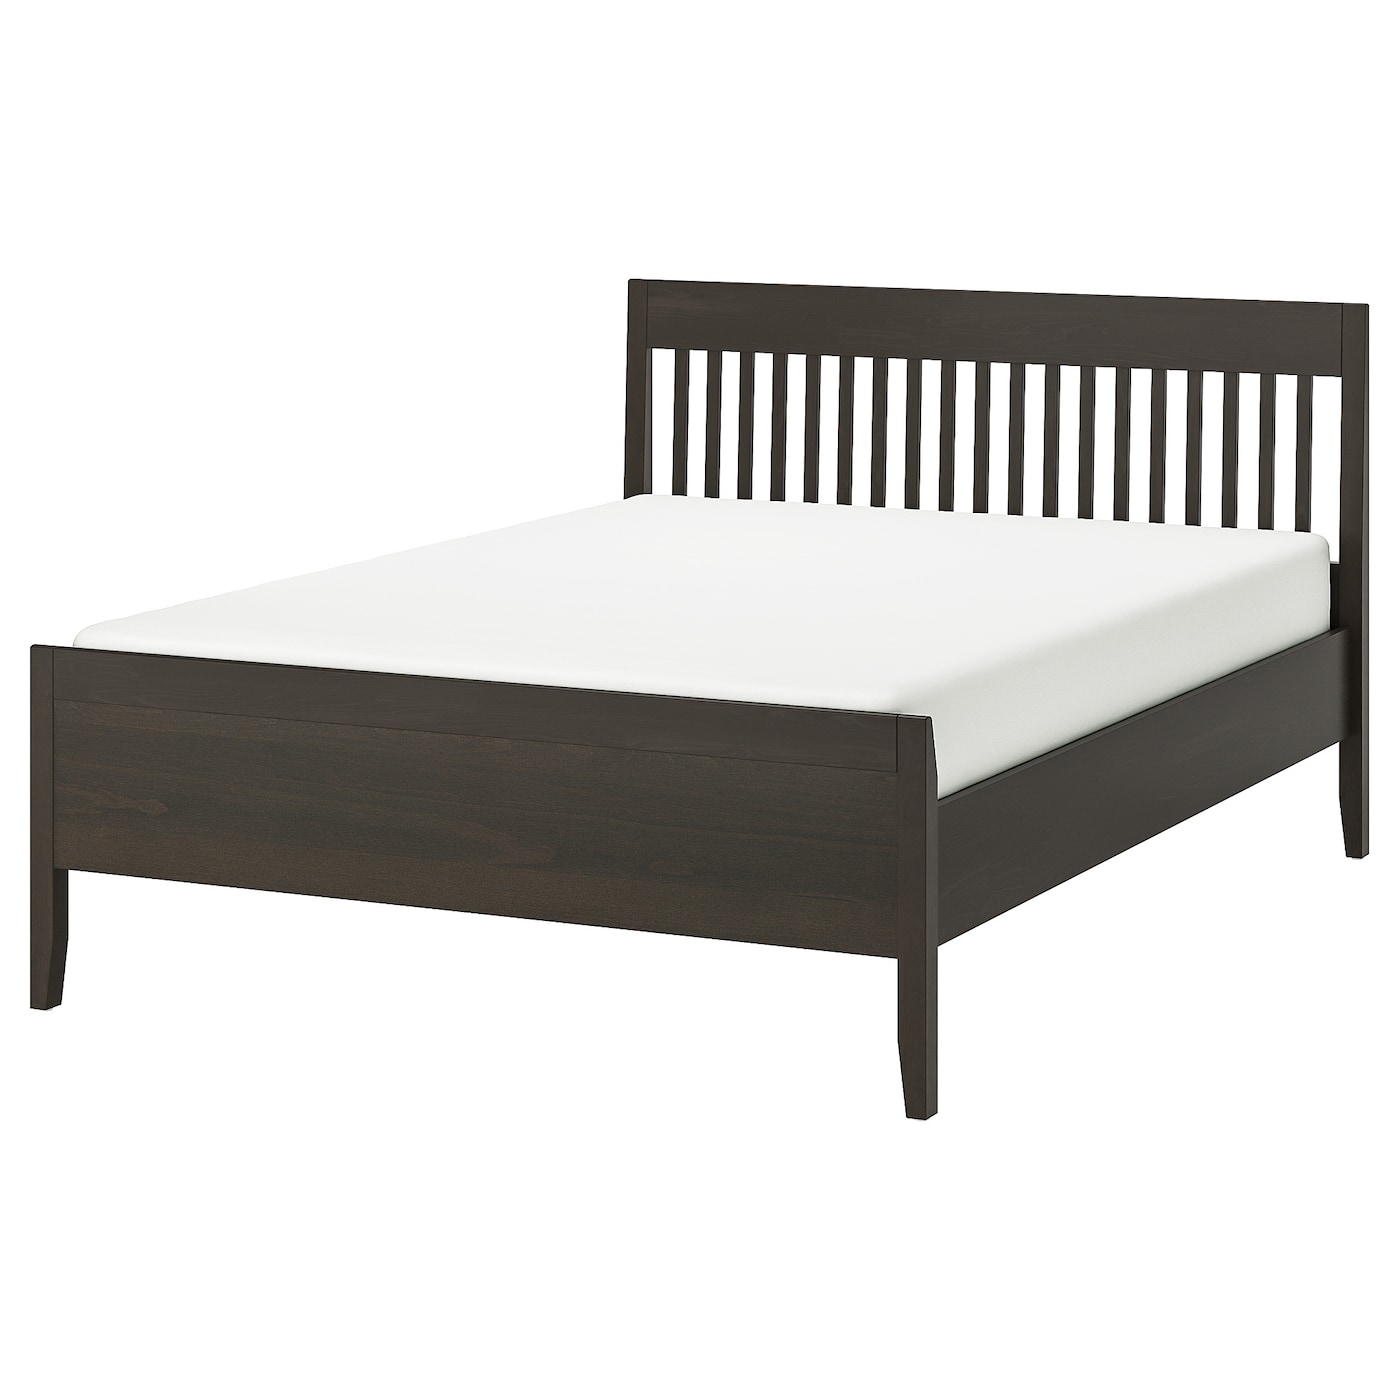 Каркас кровати - IKEA IDANÄS/IDANAS, 200х140 см, темно-коричневый, ИДАНЭС ИКЕА